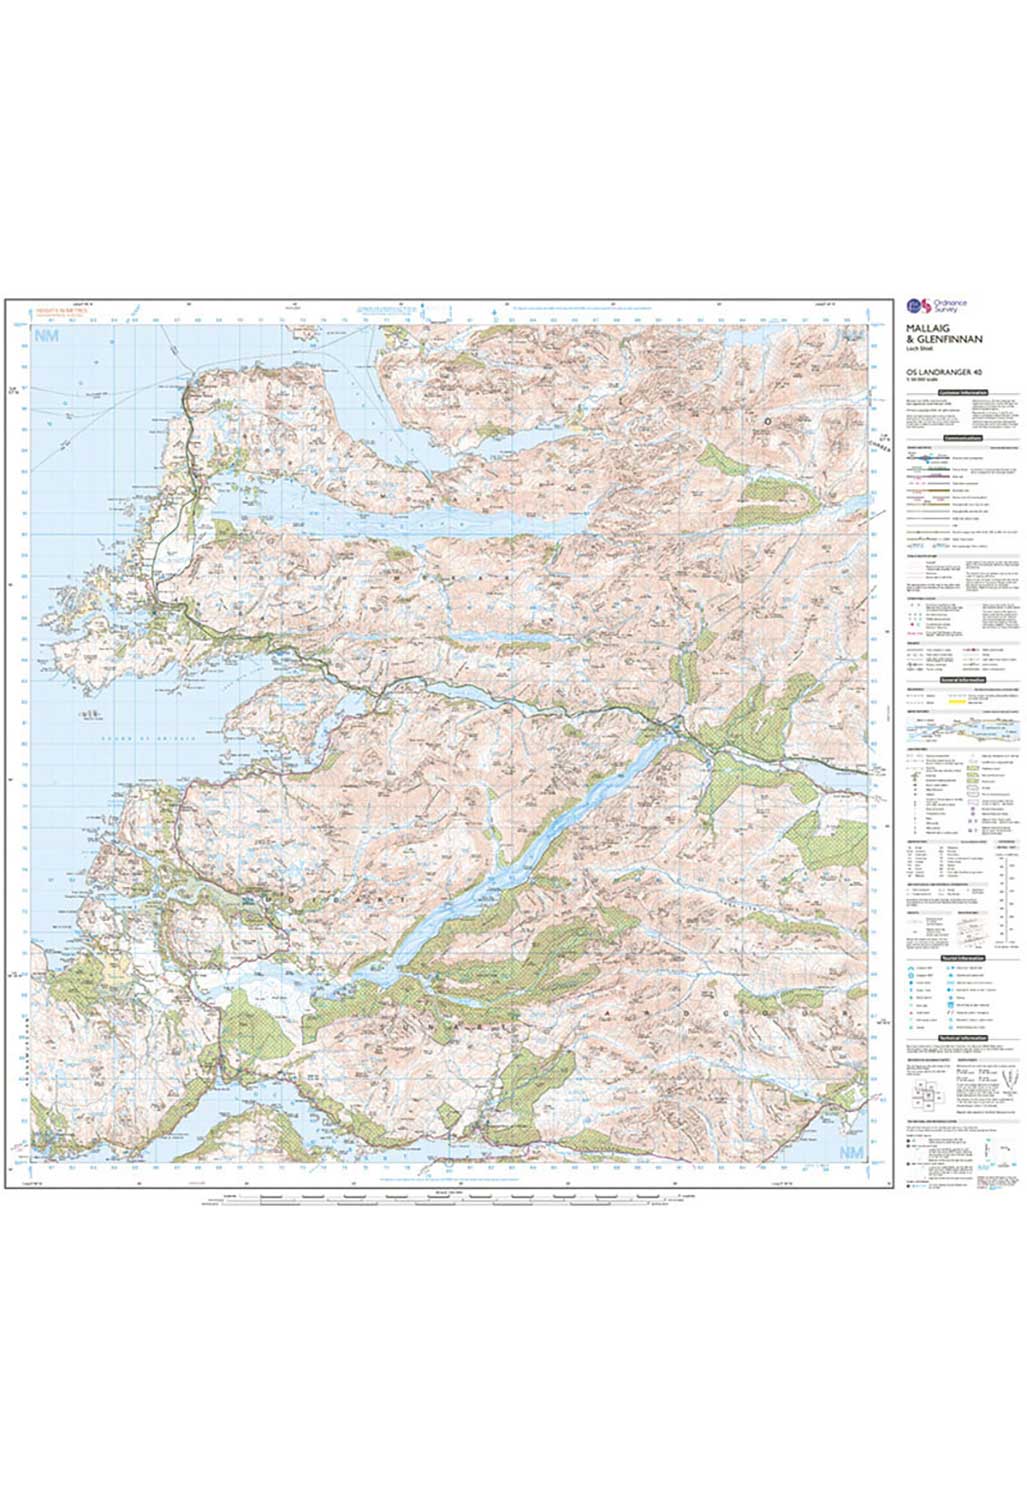 Ordnance Survey Mallaig, Glenfinnan & Loch Shiel - Landranger 40 Map